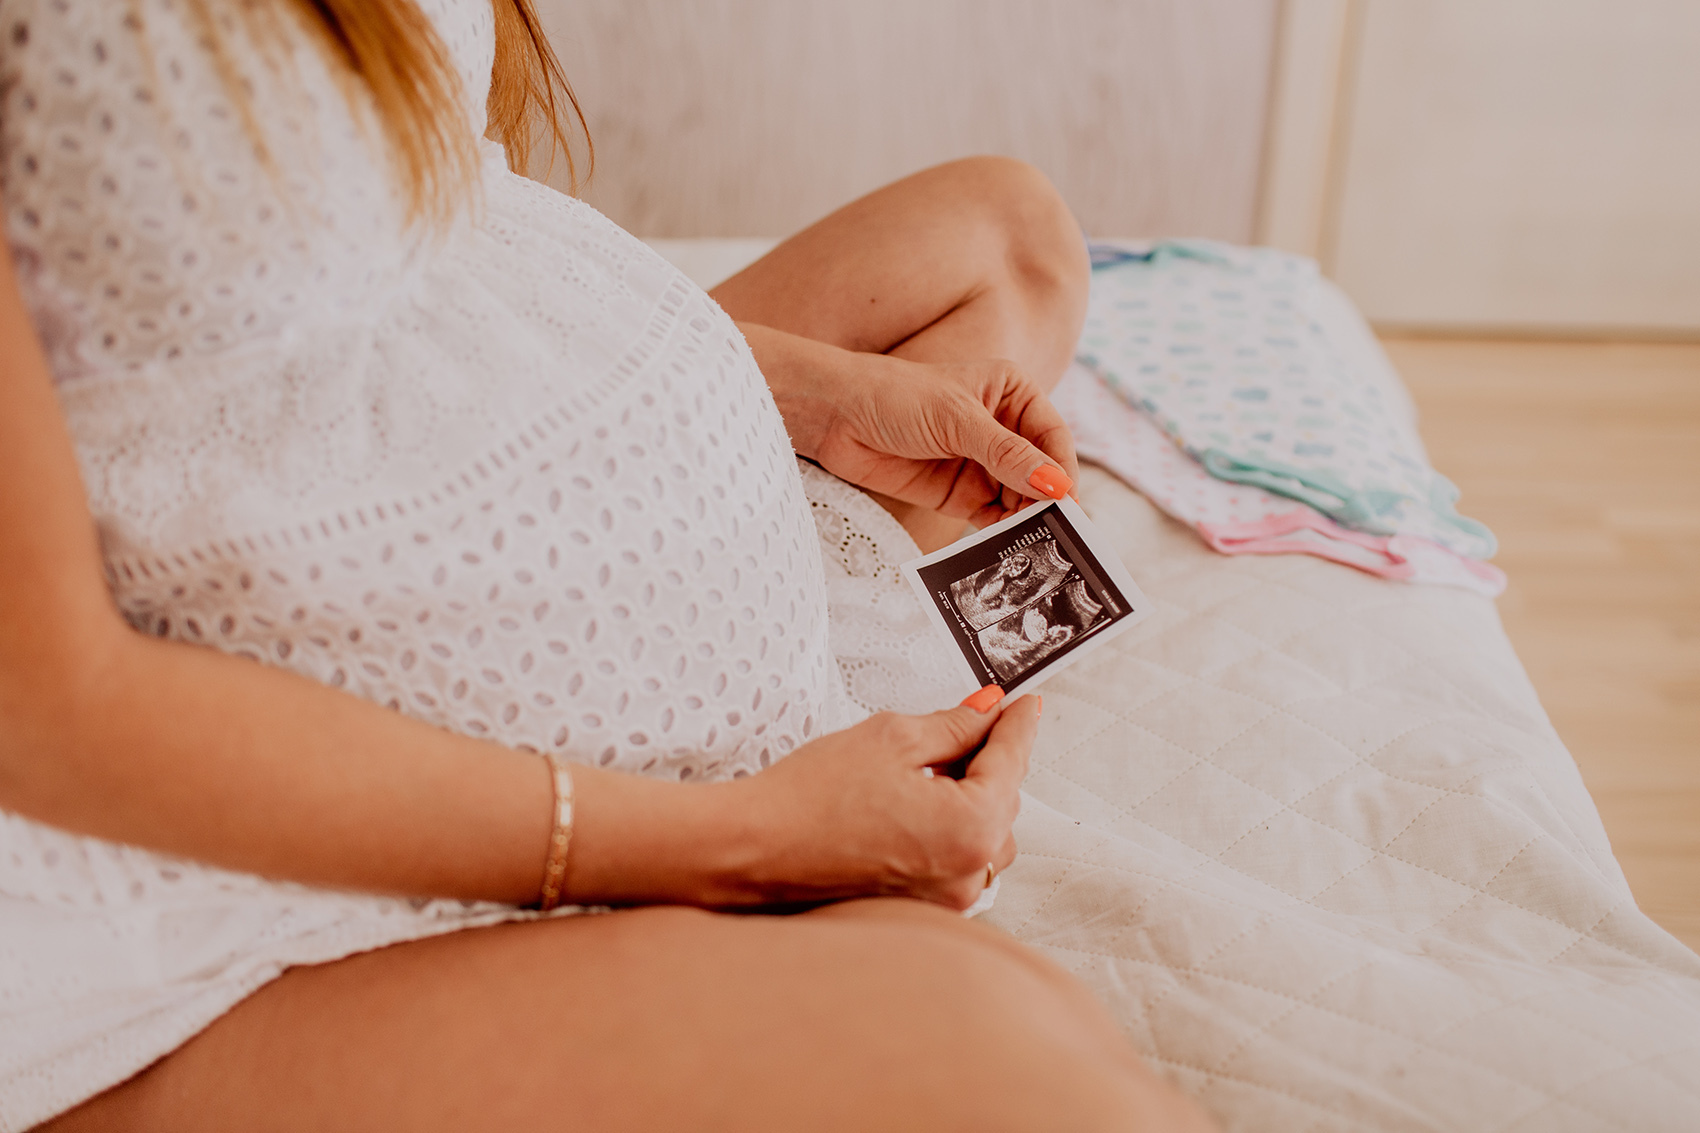 Kobiety w ciąży wielopłodowej powinny wyjątkowo dbać o swoje zdrowie. Angelika Doroszewska sprawdziła w swoim badaniu, czy tak jest rzeczywiście